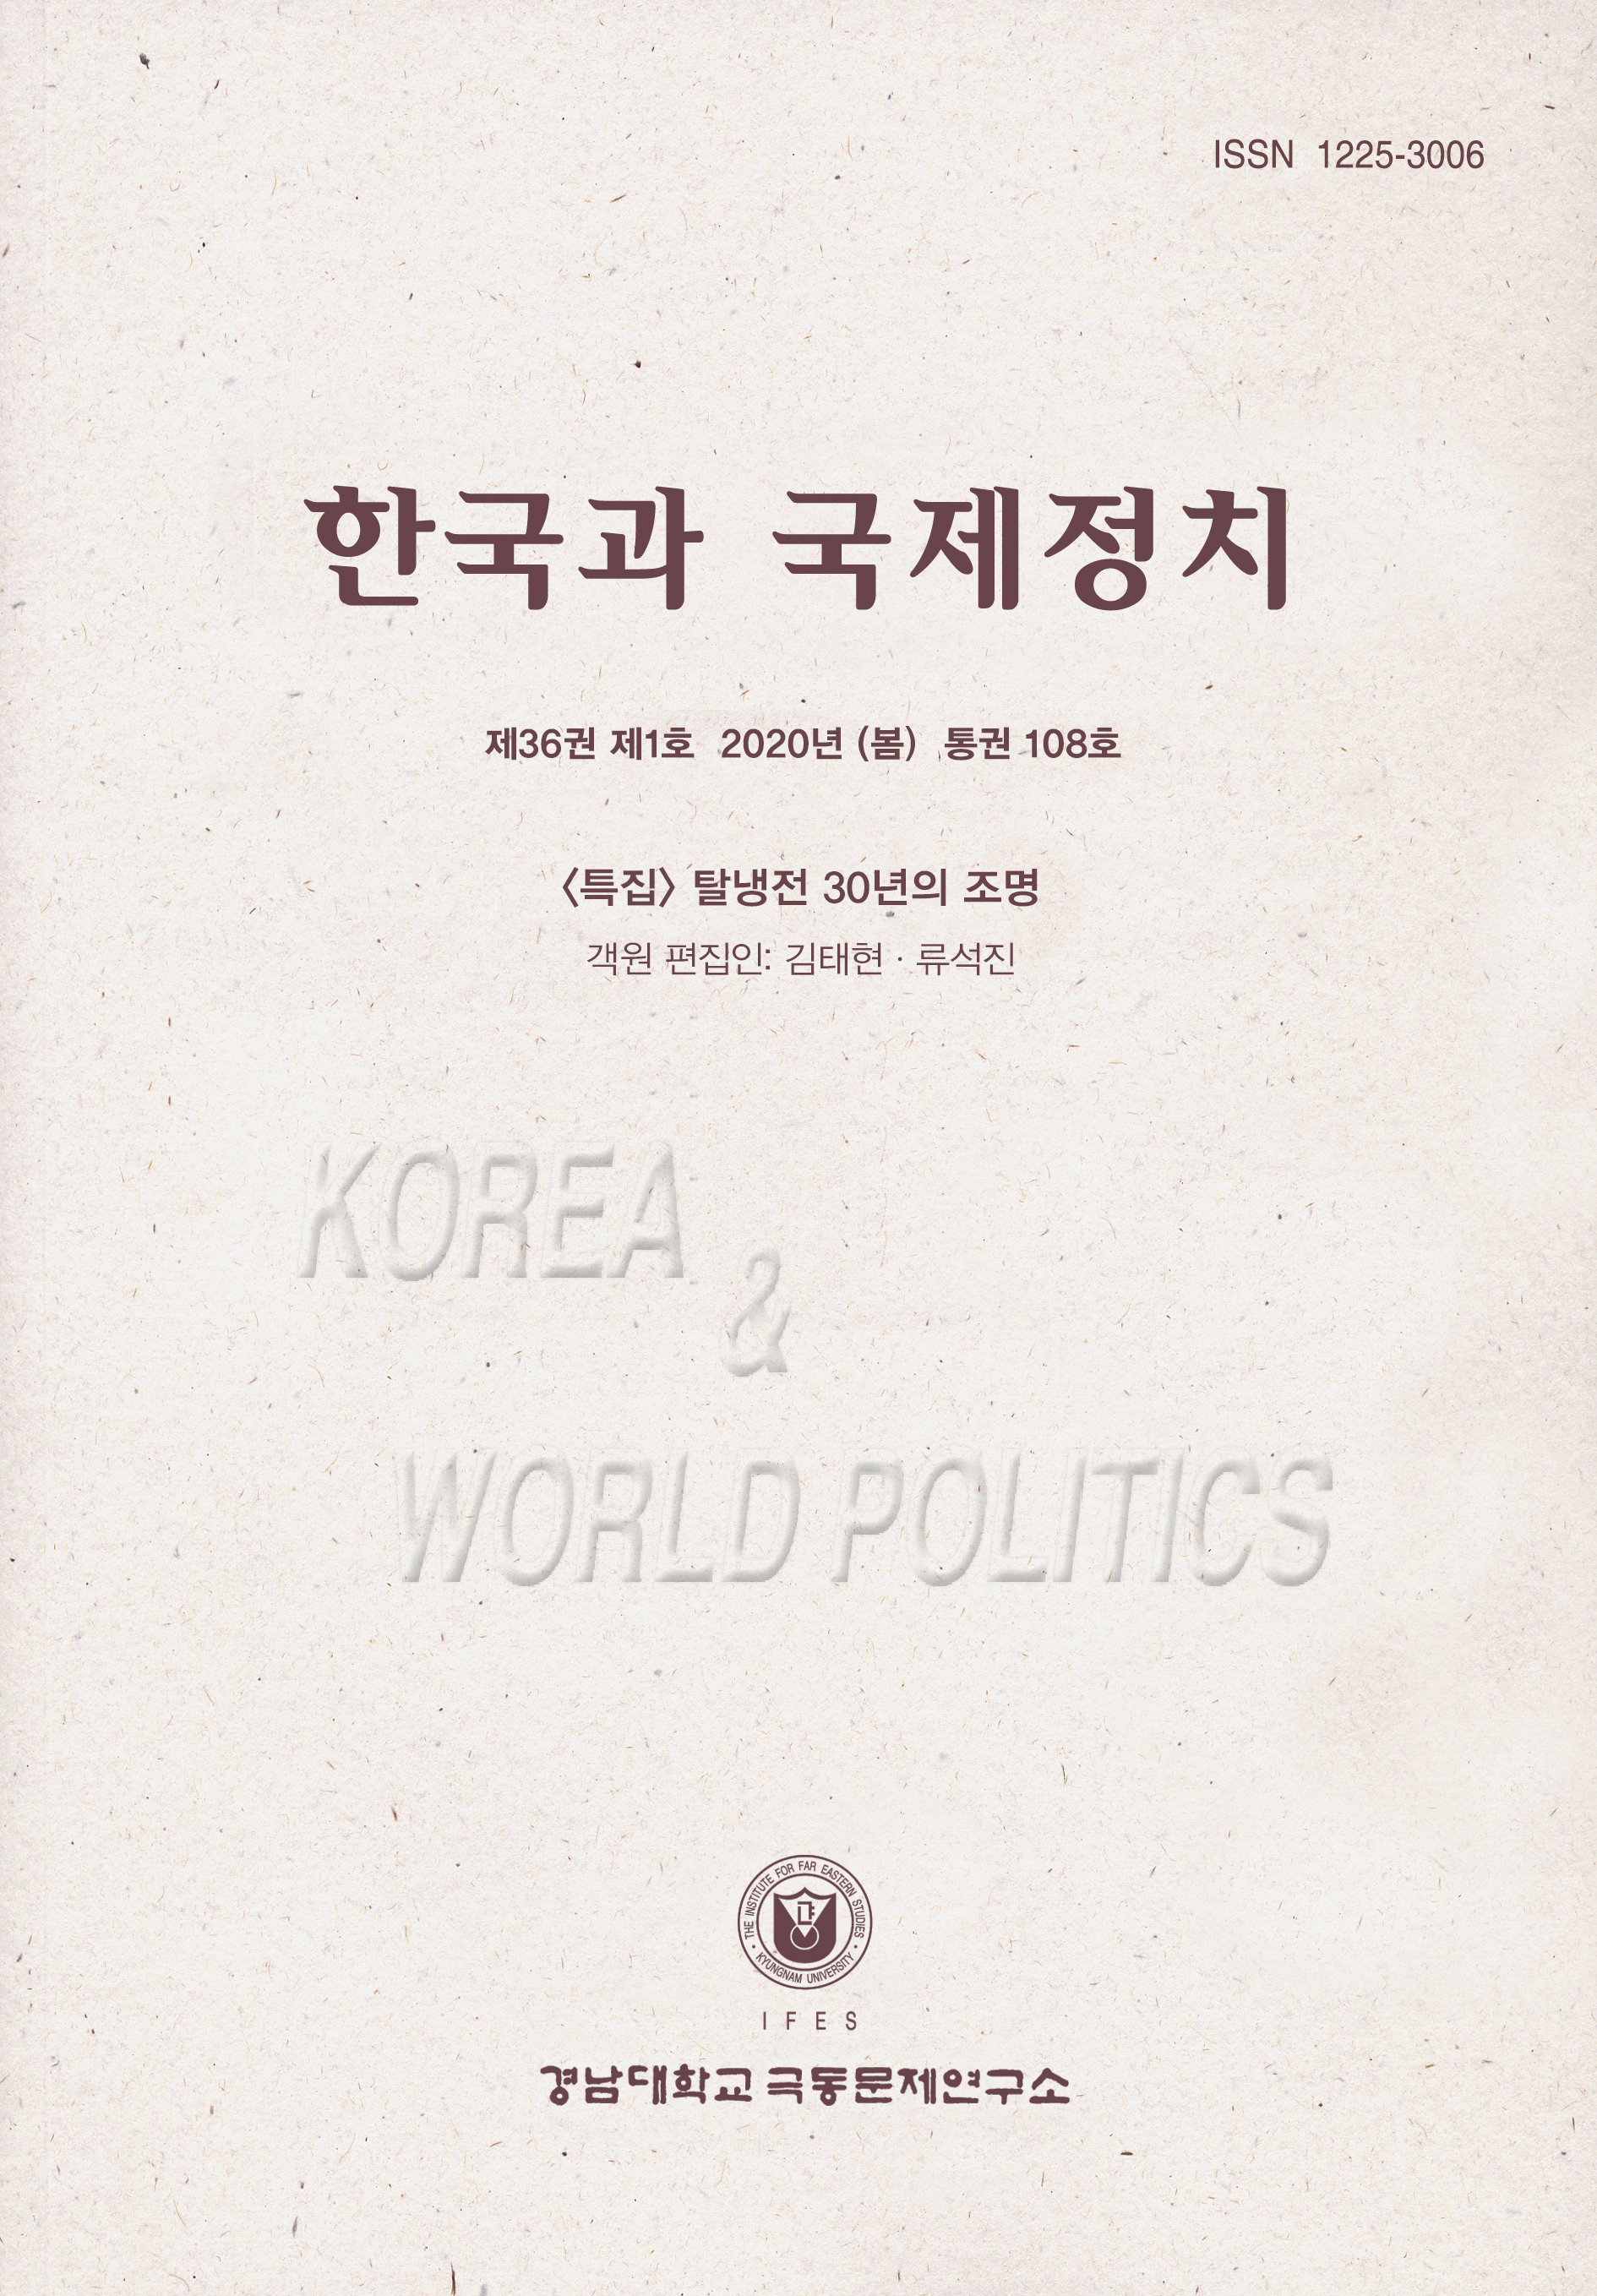 Korea and World Politics, Vol.36, No.1